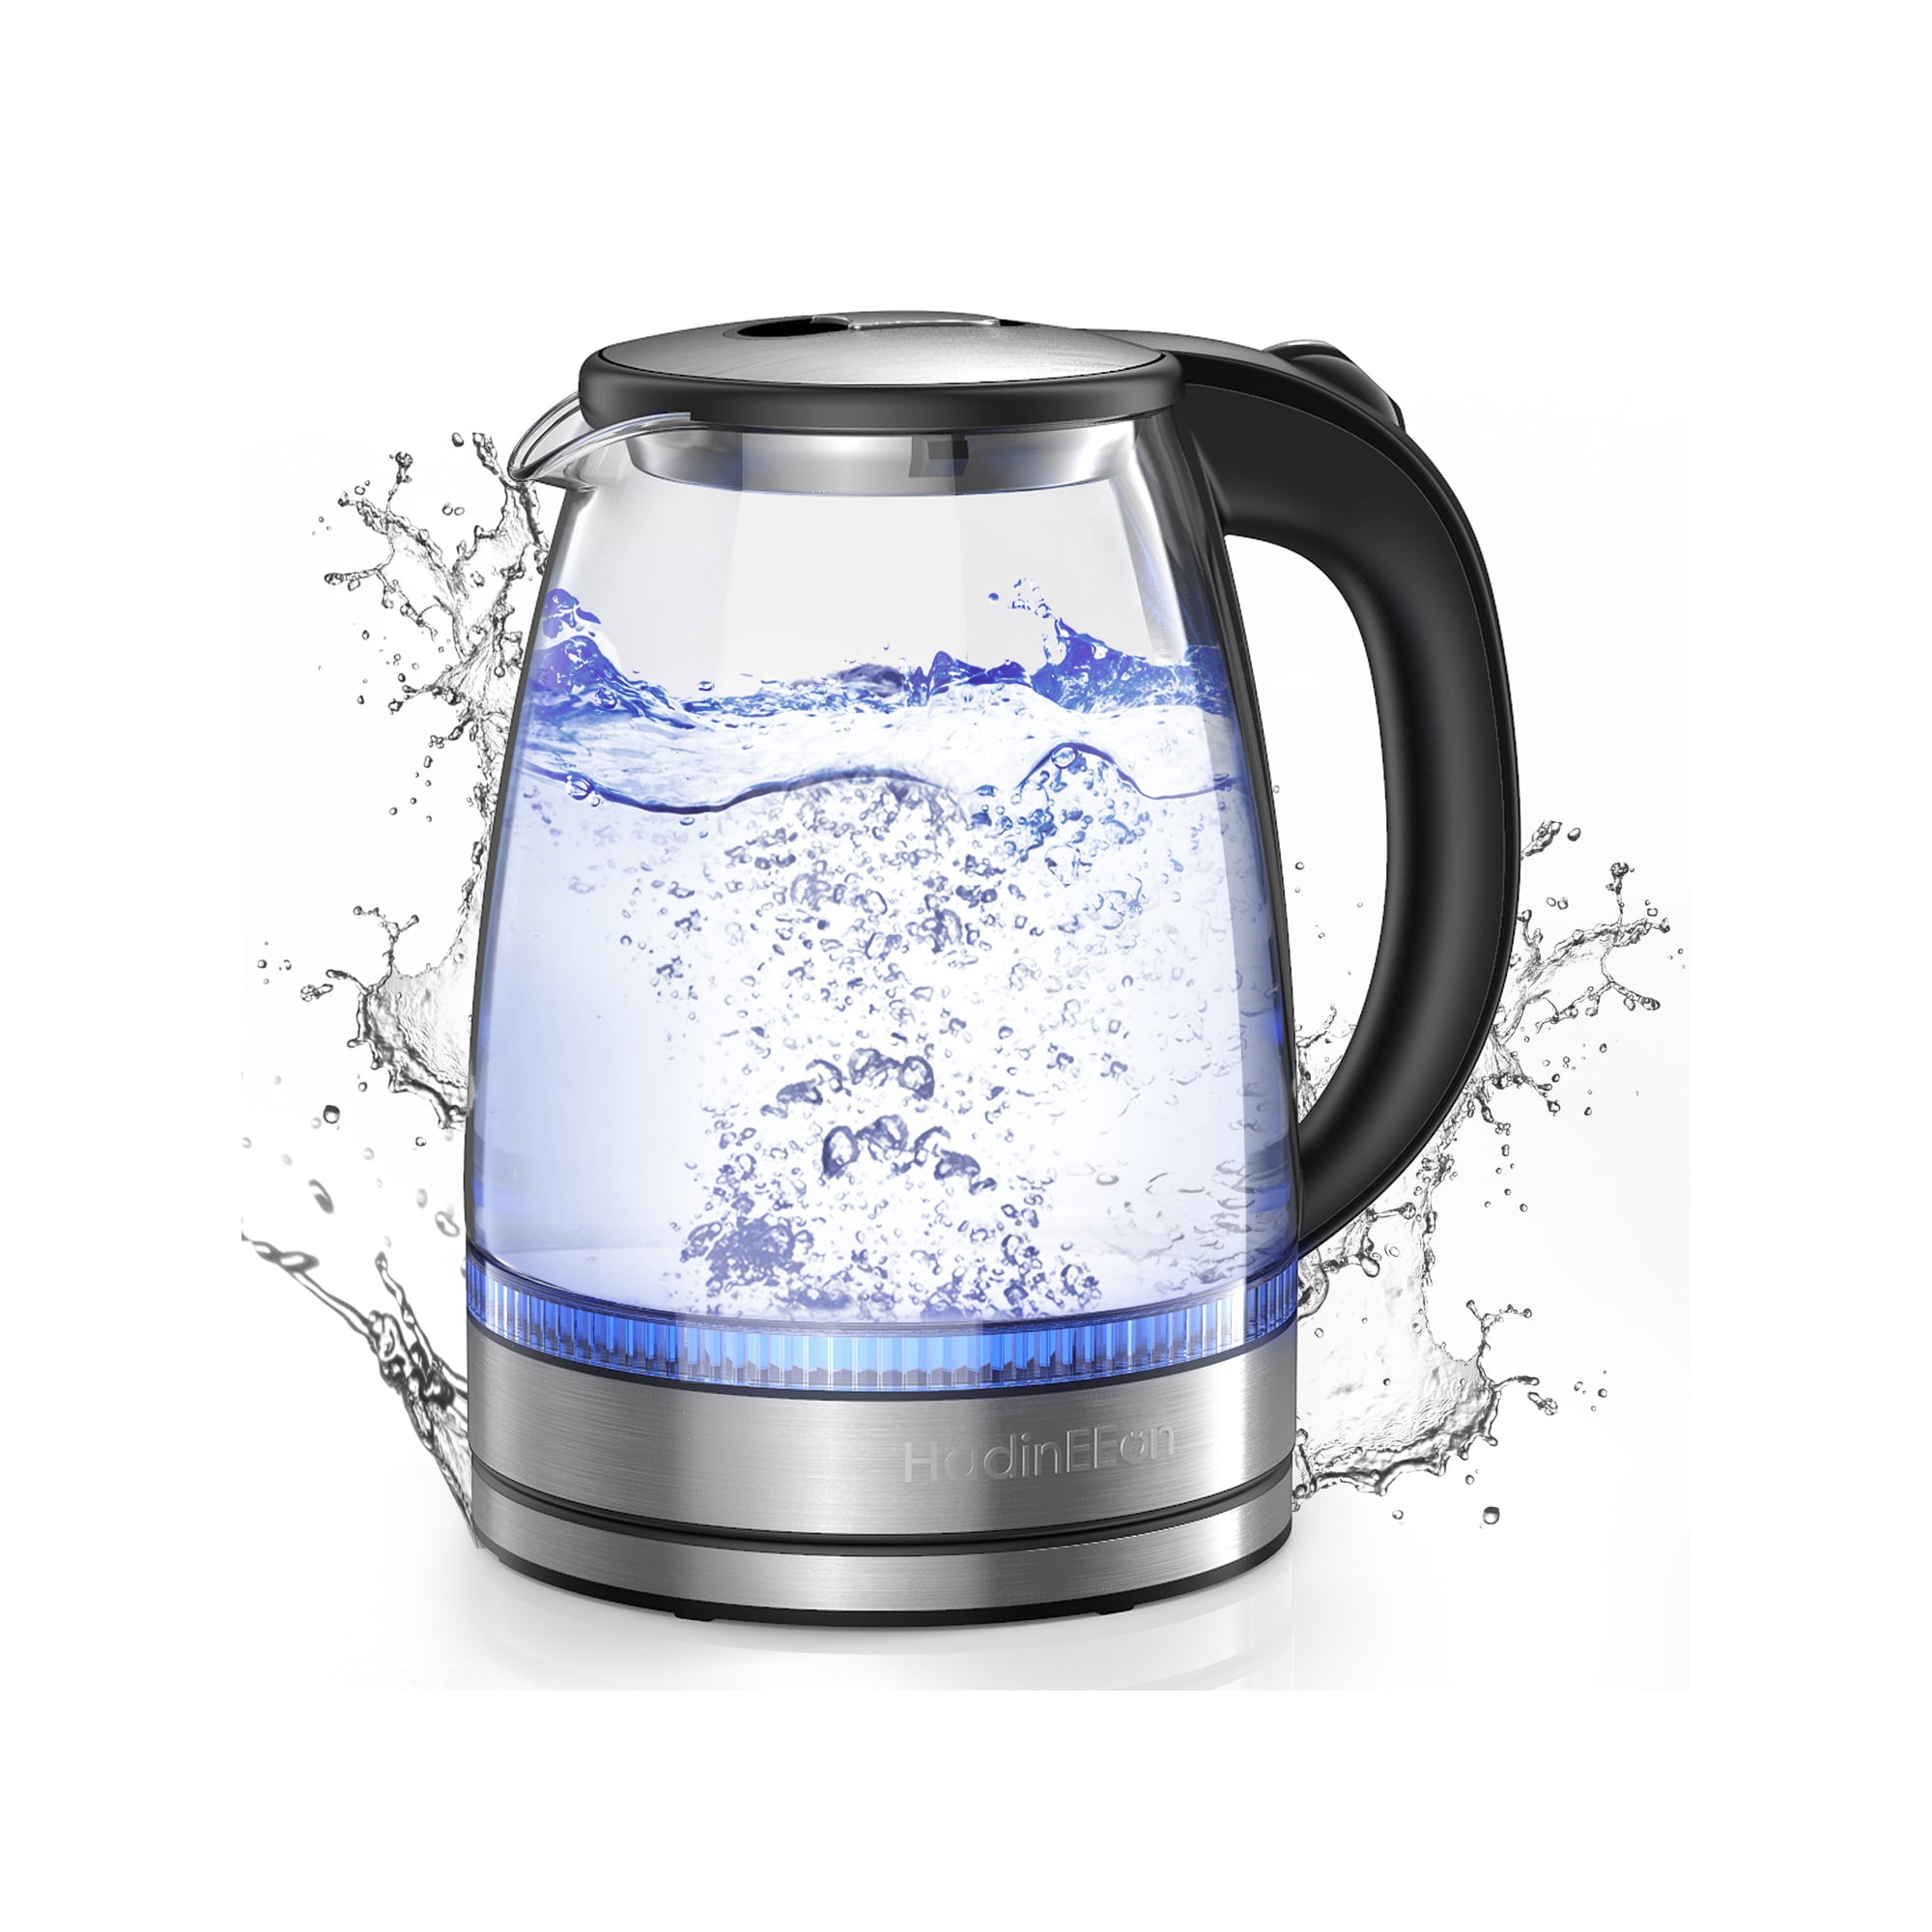 FixtureDisplays® Ceramic Electric Kettle Water Boiler Tea Maker 15001NEW-NF